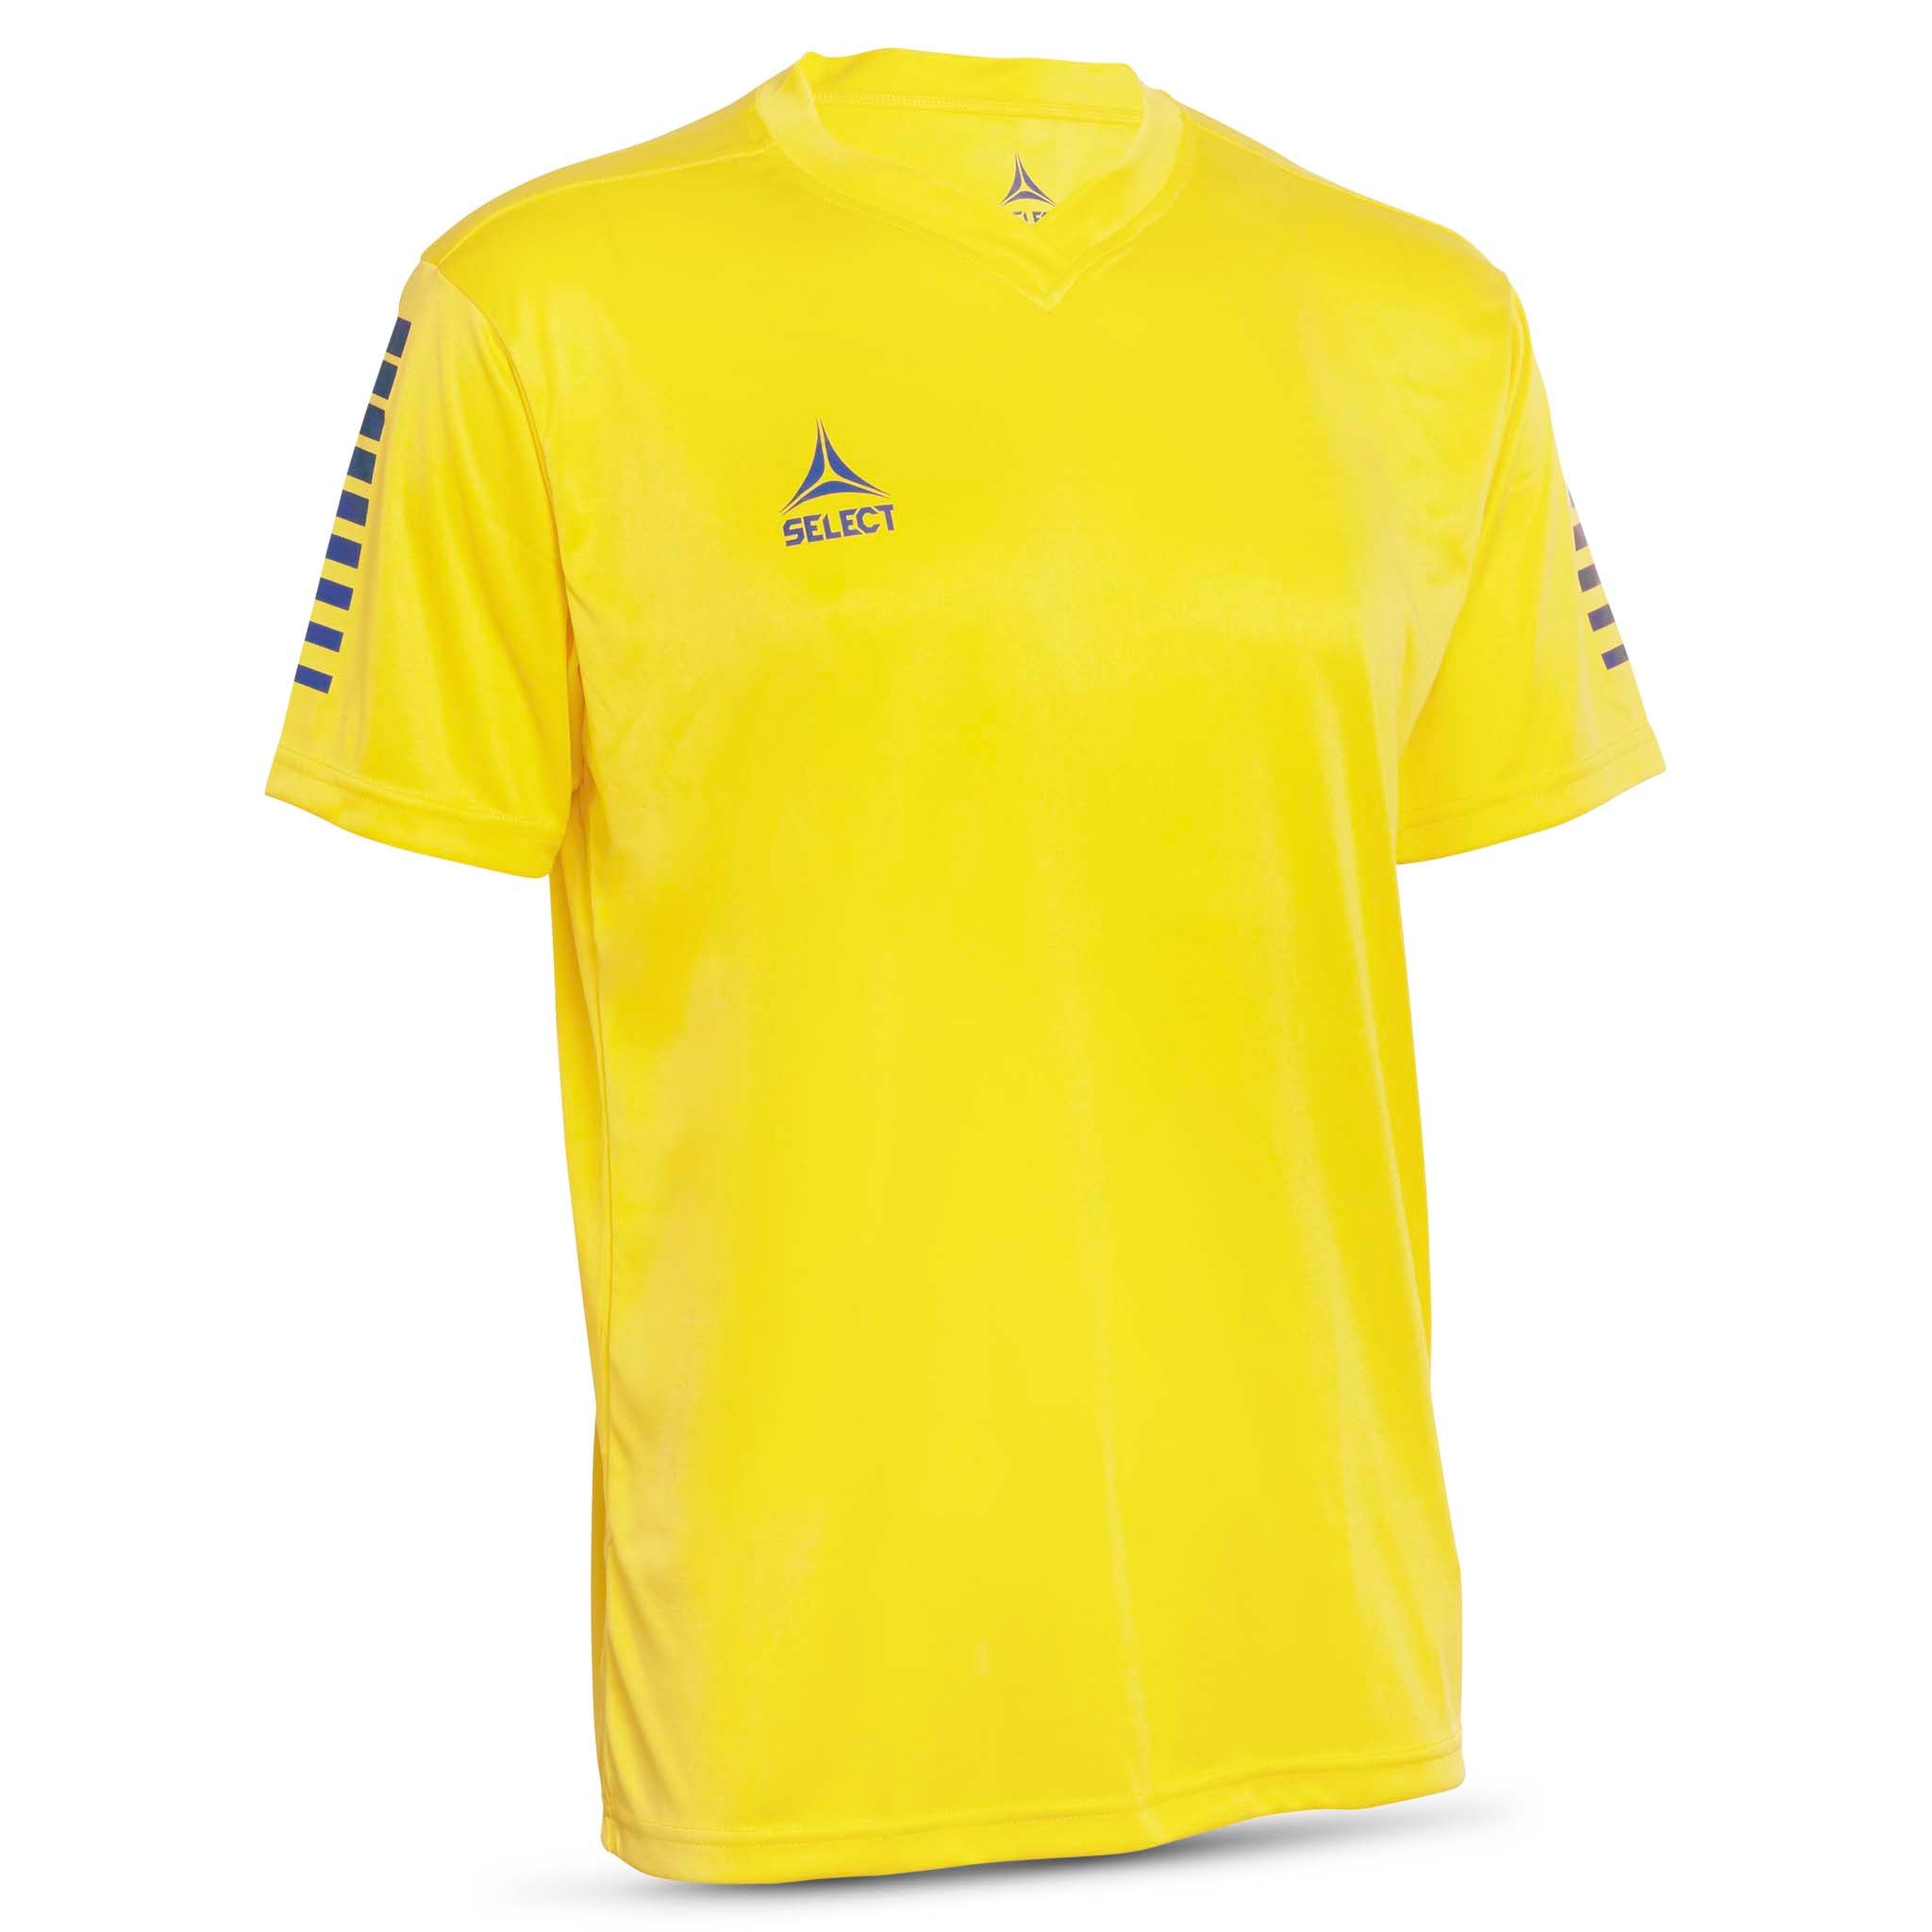 Pisa Short Sleeve player shirt - Kids #colour_yellow/blue